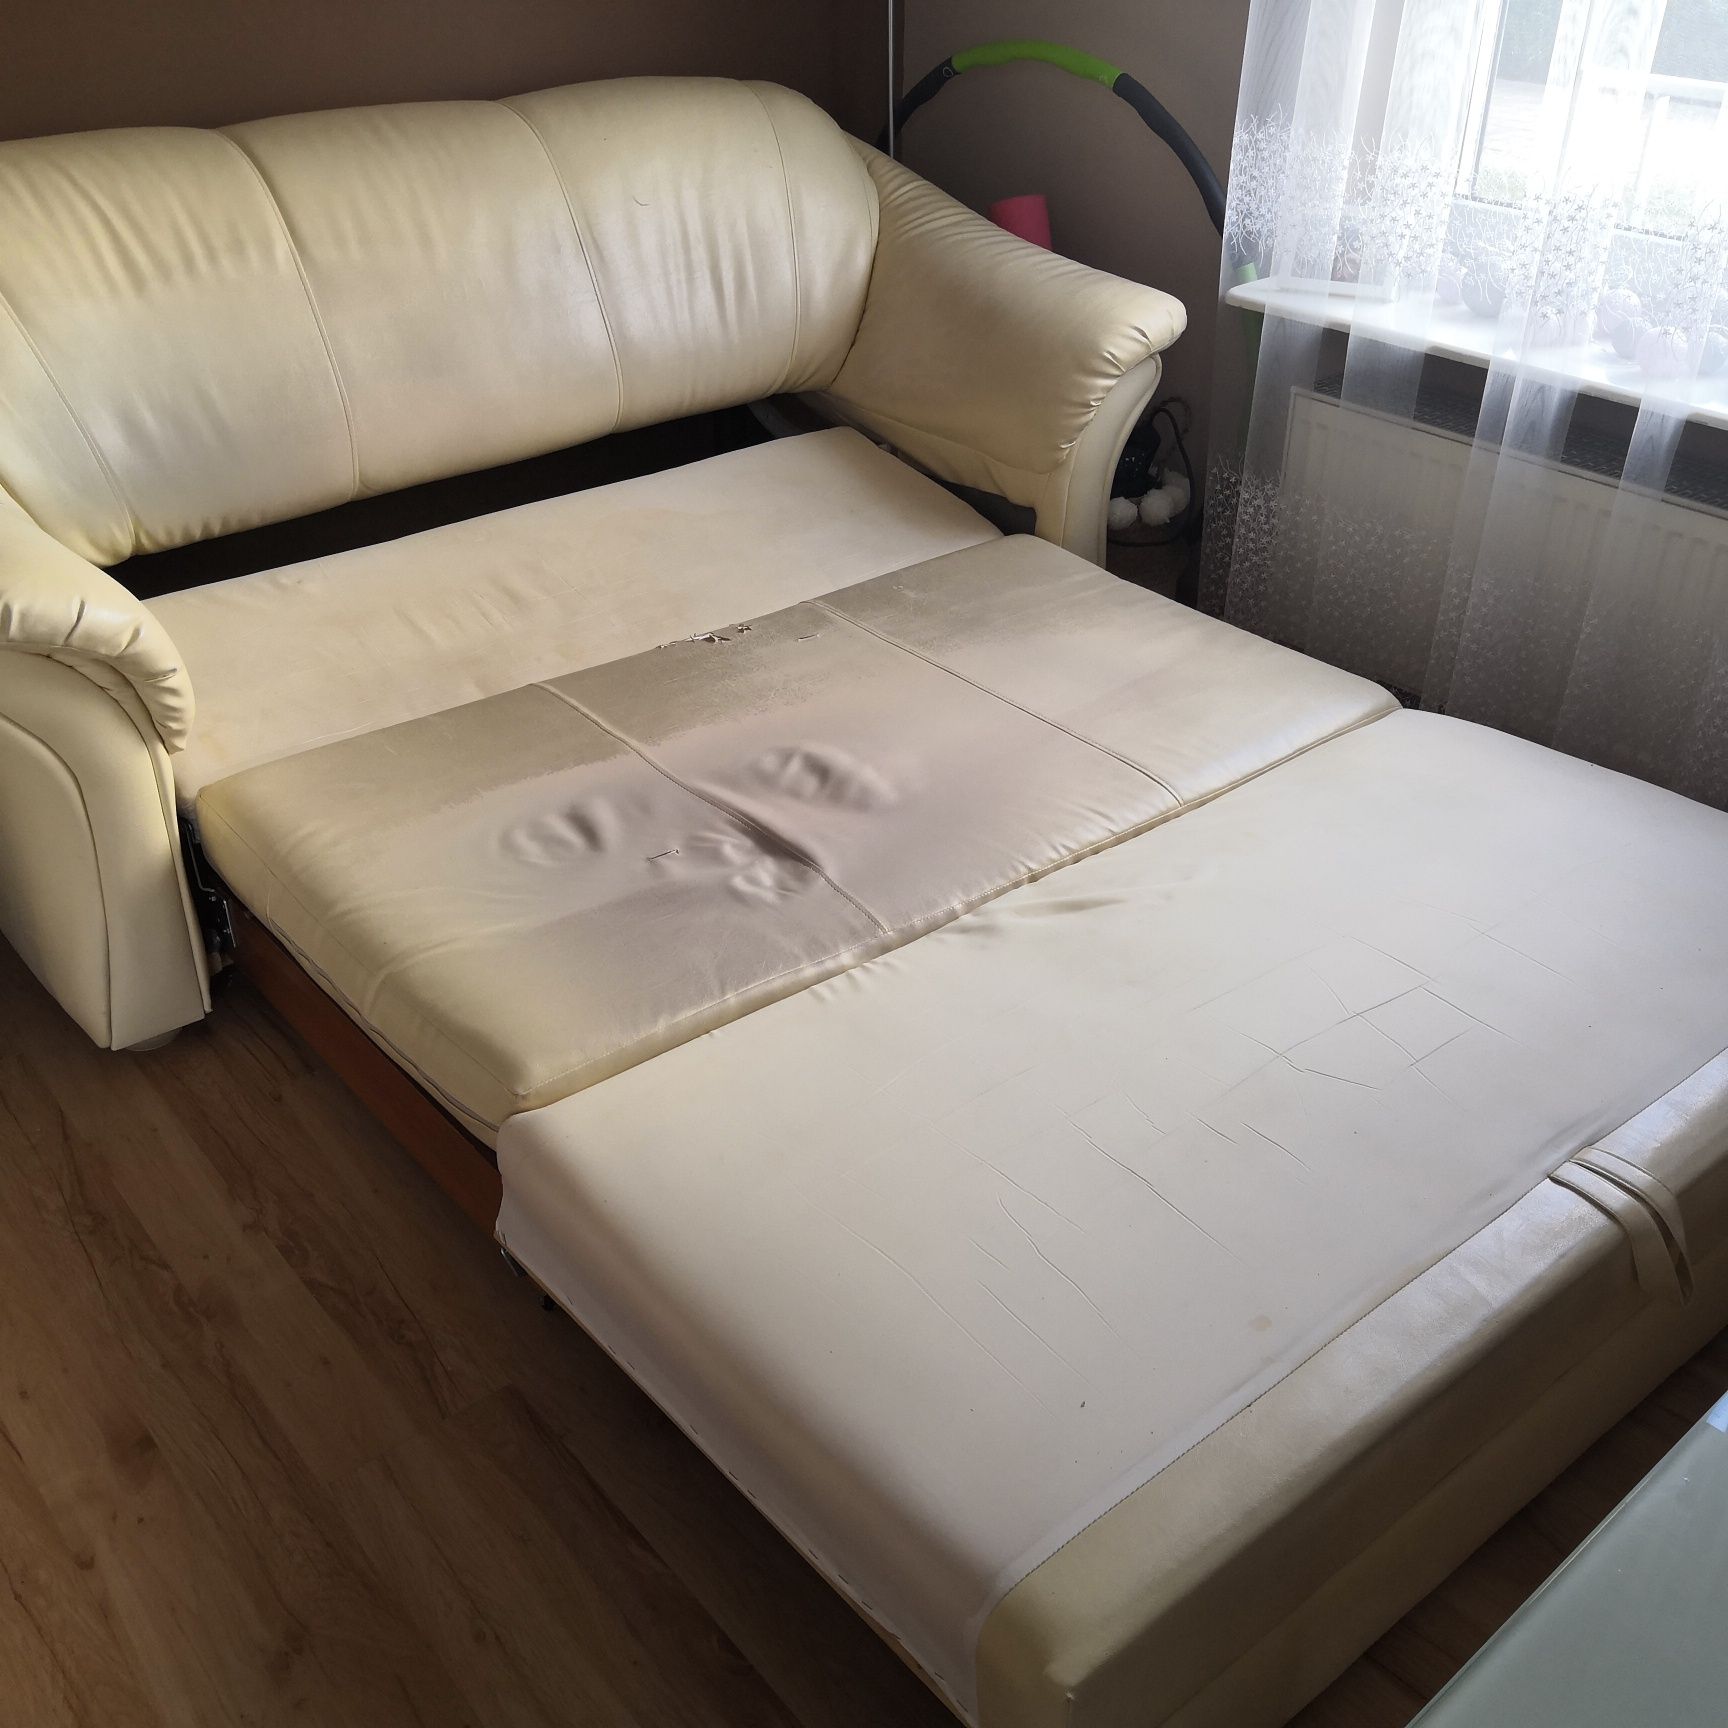 Zestaw mebli - sofa z funkcją spania + fotel